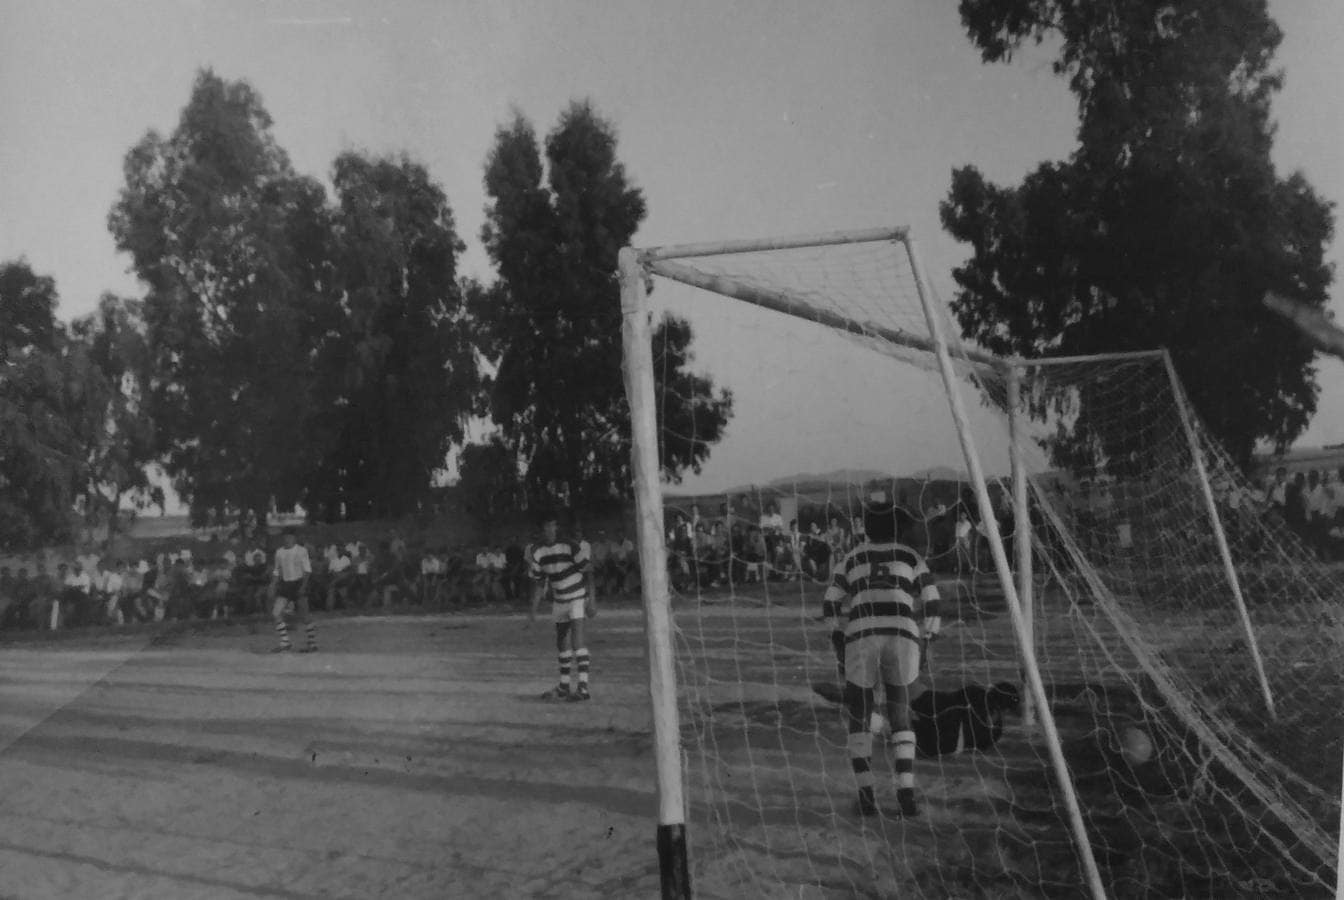 Momento en el que el objetivo de la cámara capta un gol del CD Guareña en el campo de 'Las cañas'.